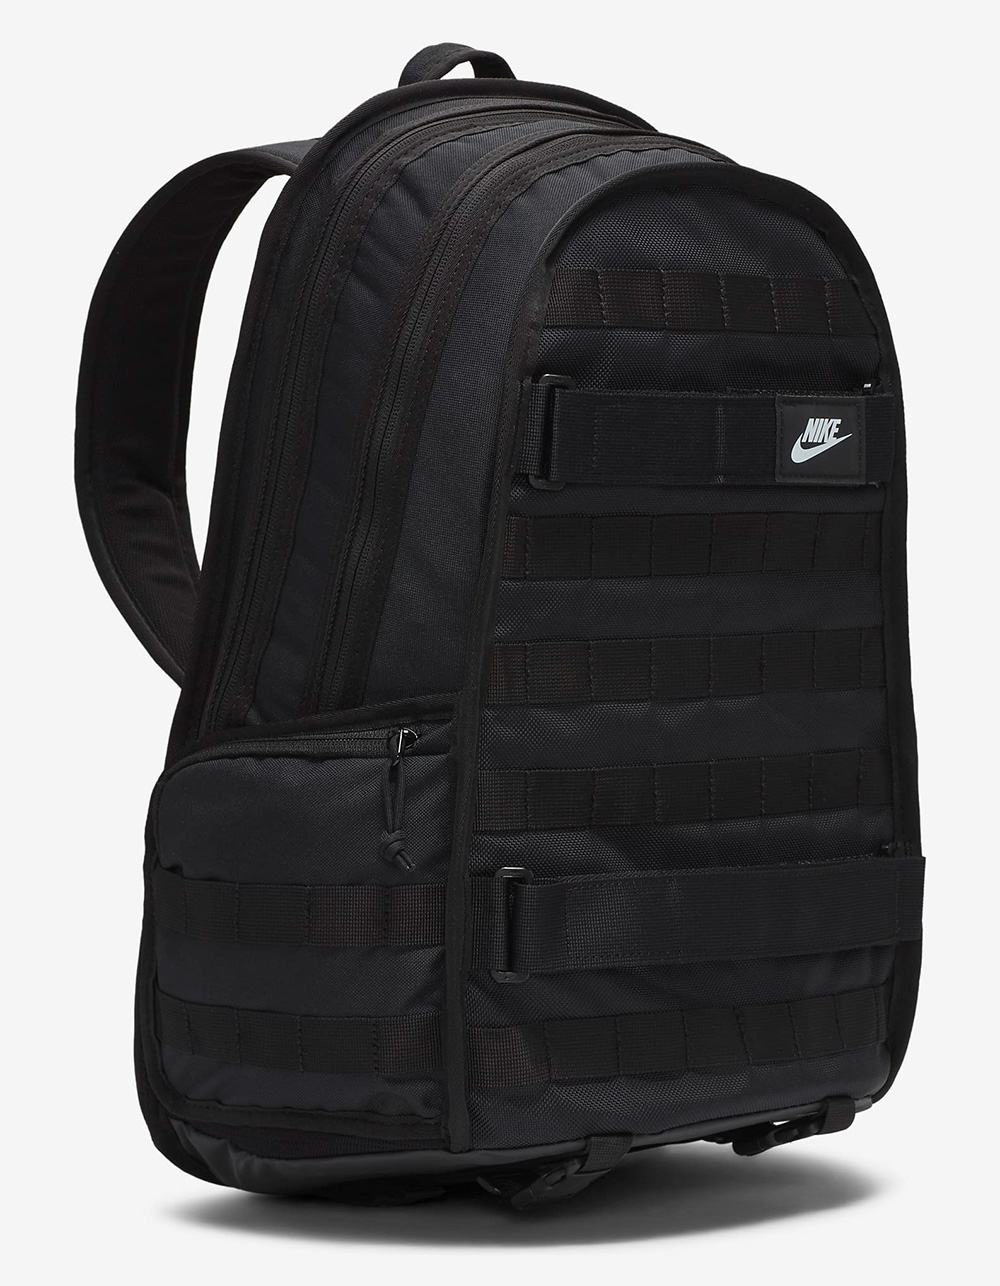 NIKE Sportswear RPM Backpack - BLACK Tillys